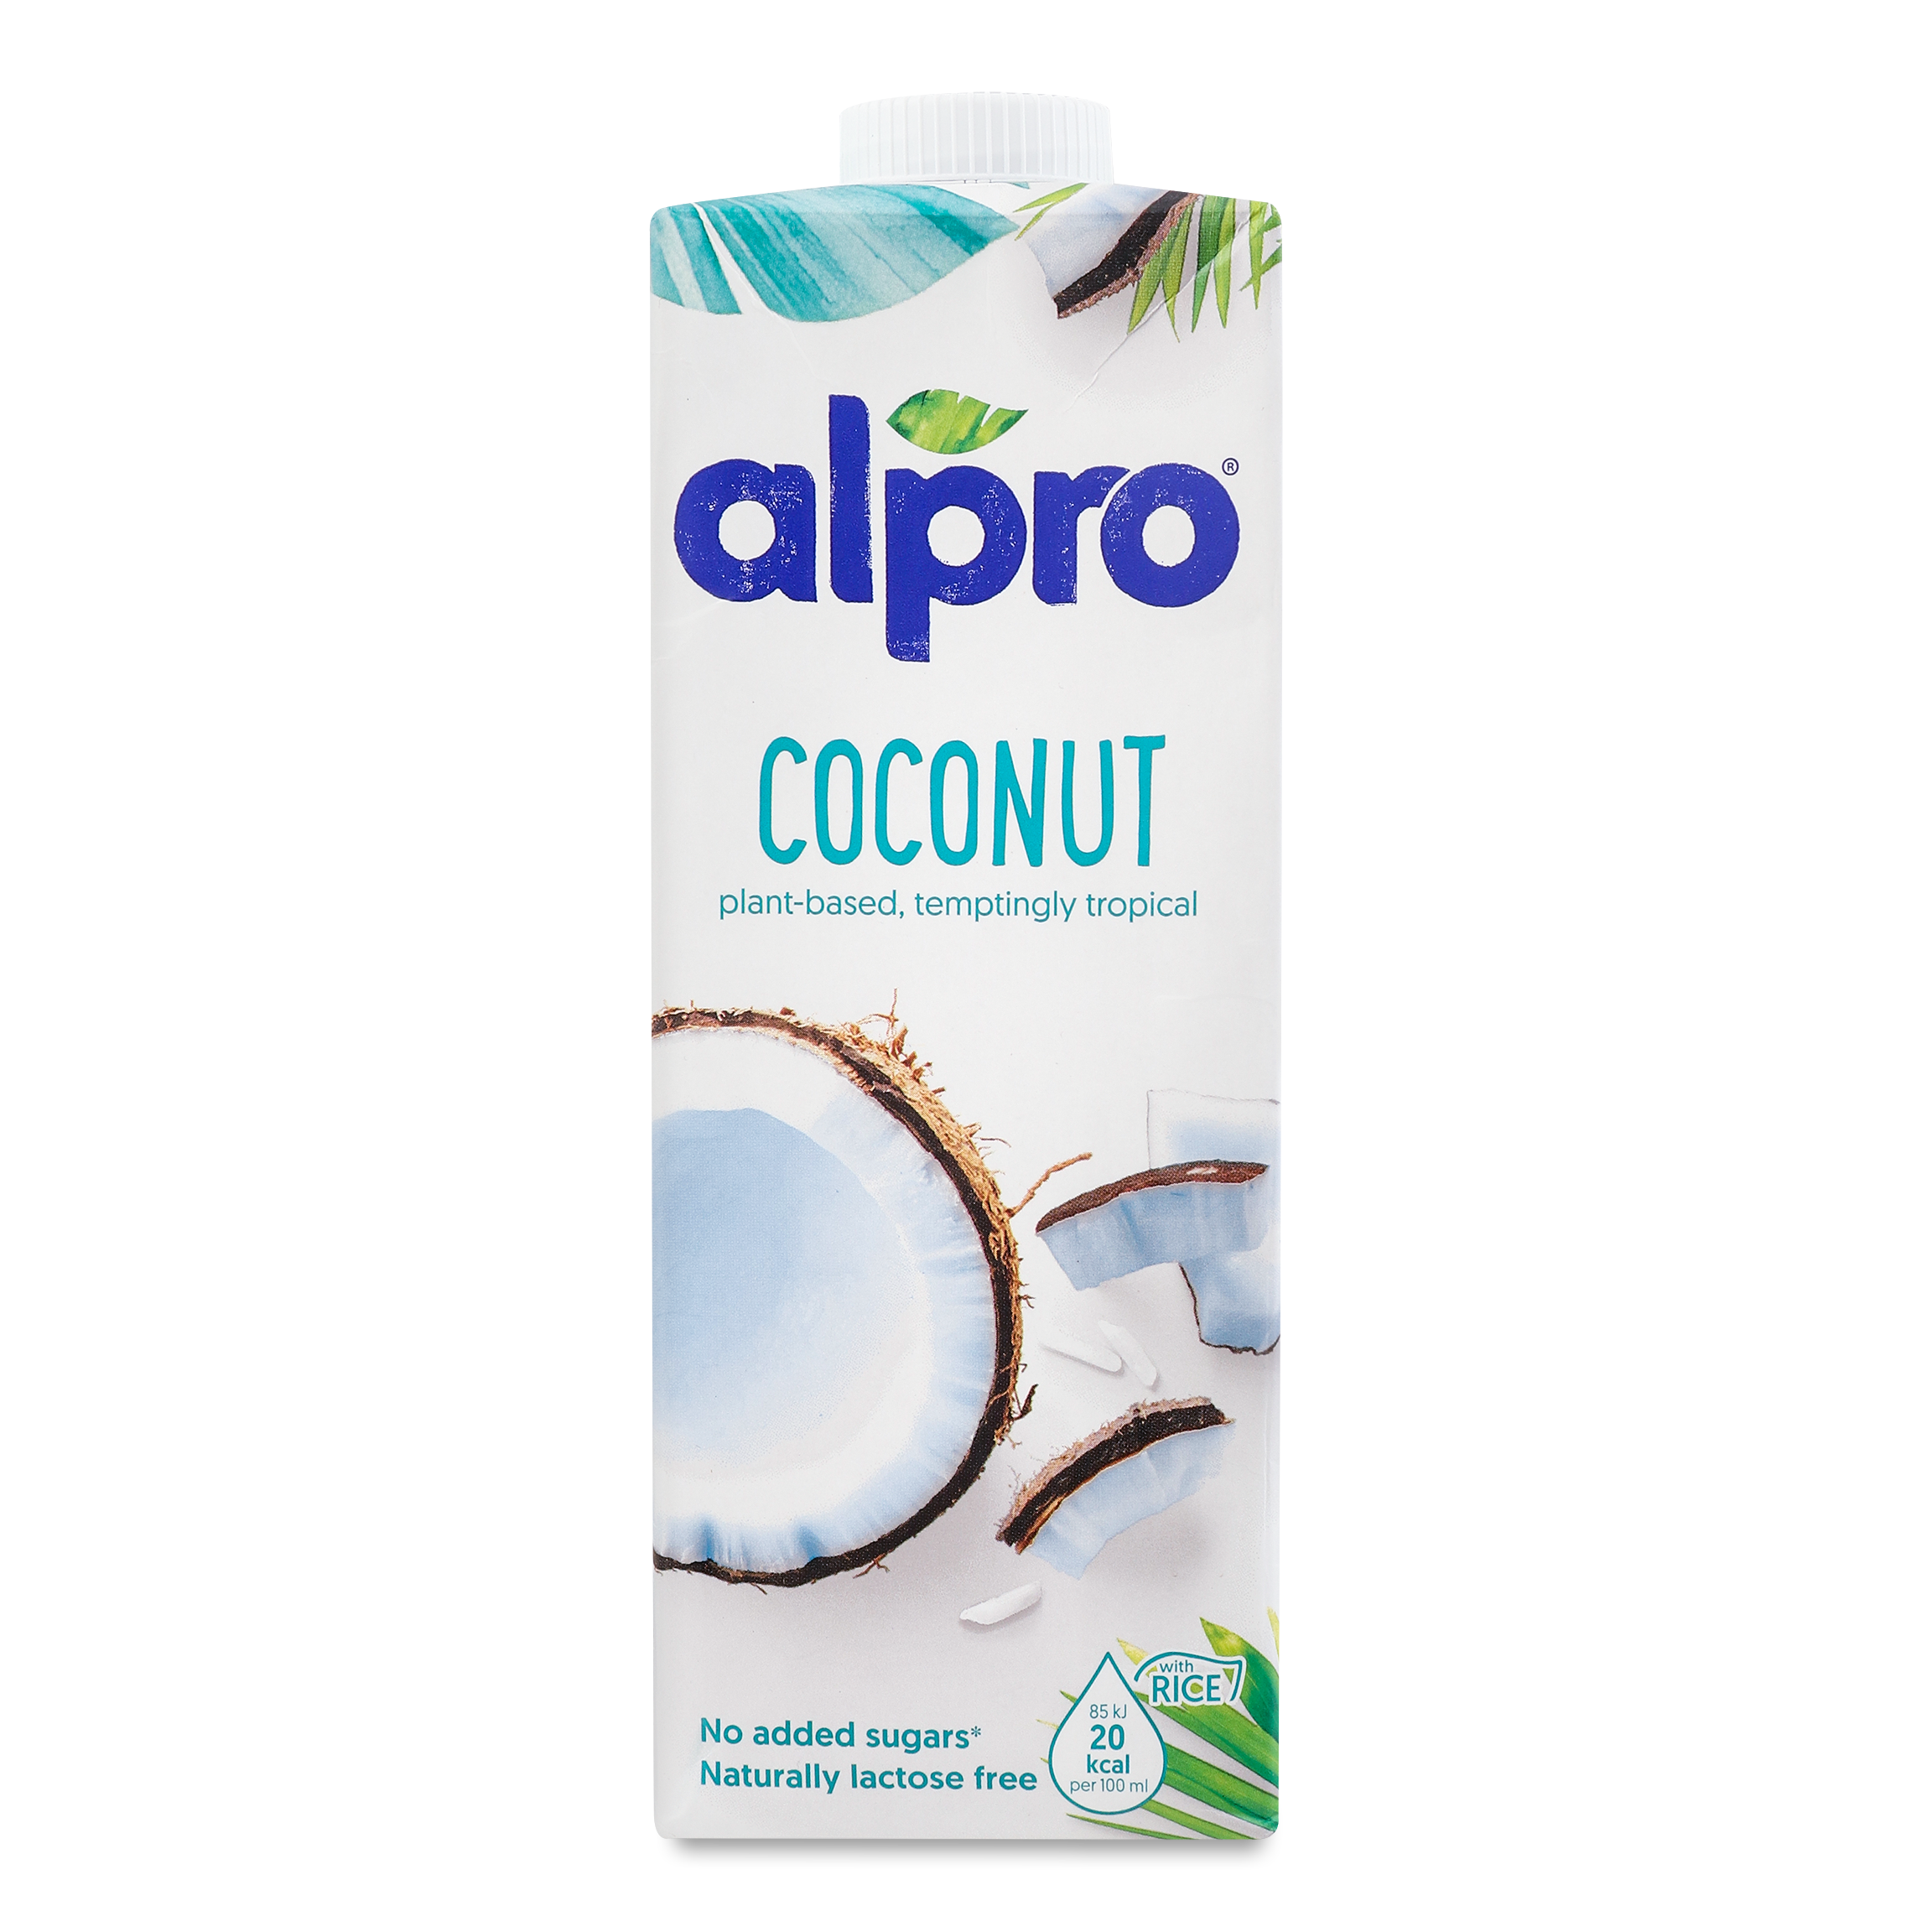 Напій Alpro кокосовий з рисом 1л